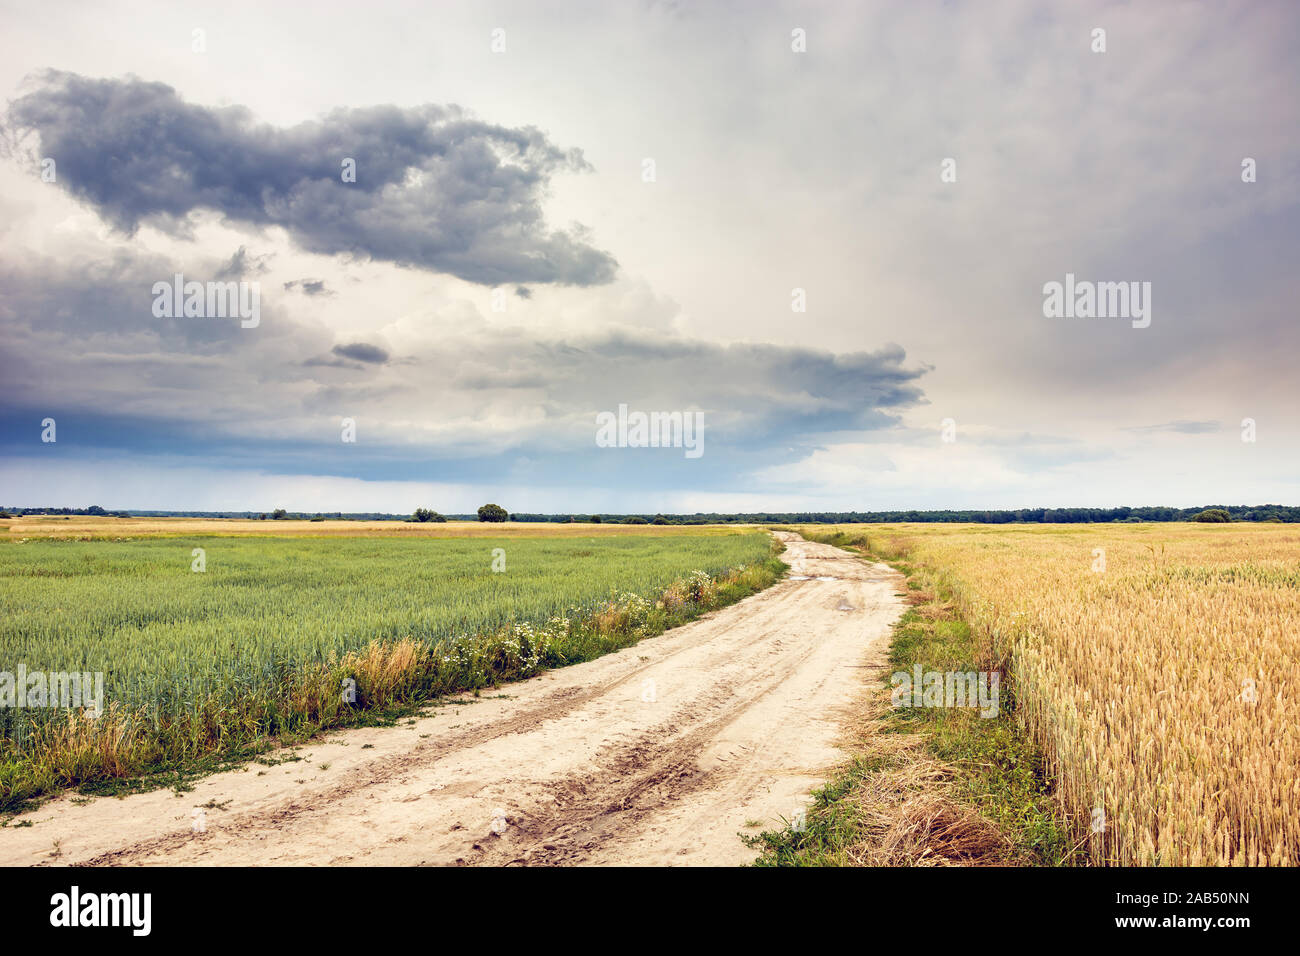 Strada di sabbia attraverso i campi e la nuvola di pioggia nel cielo. Sajczyce, Polonia Foto Stock